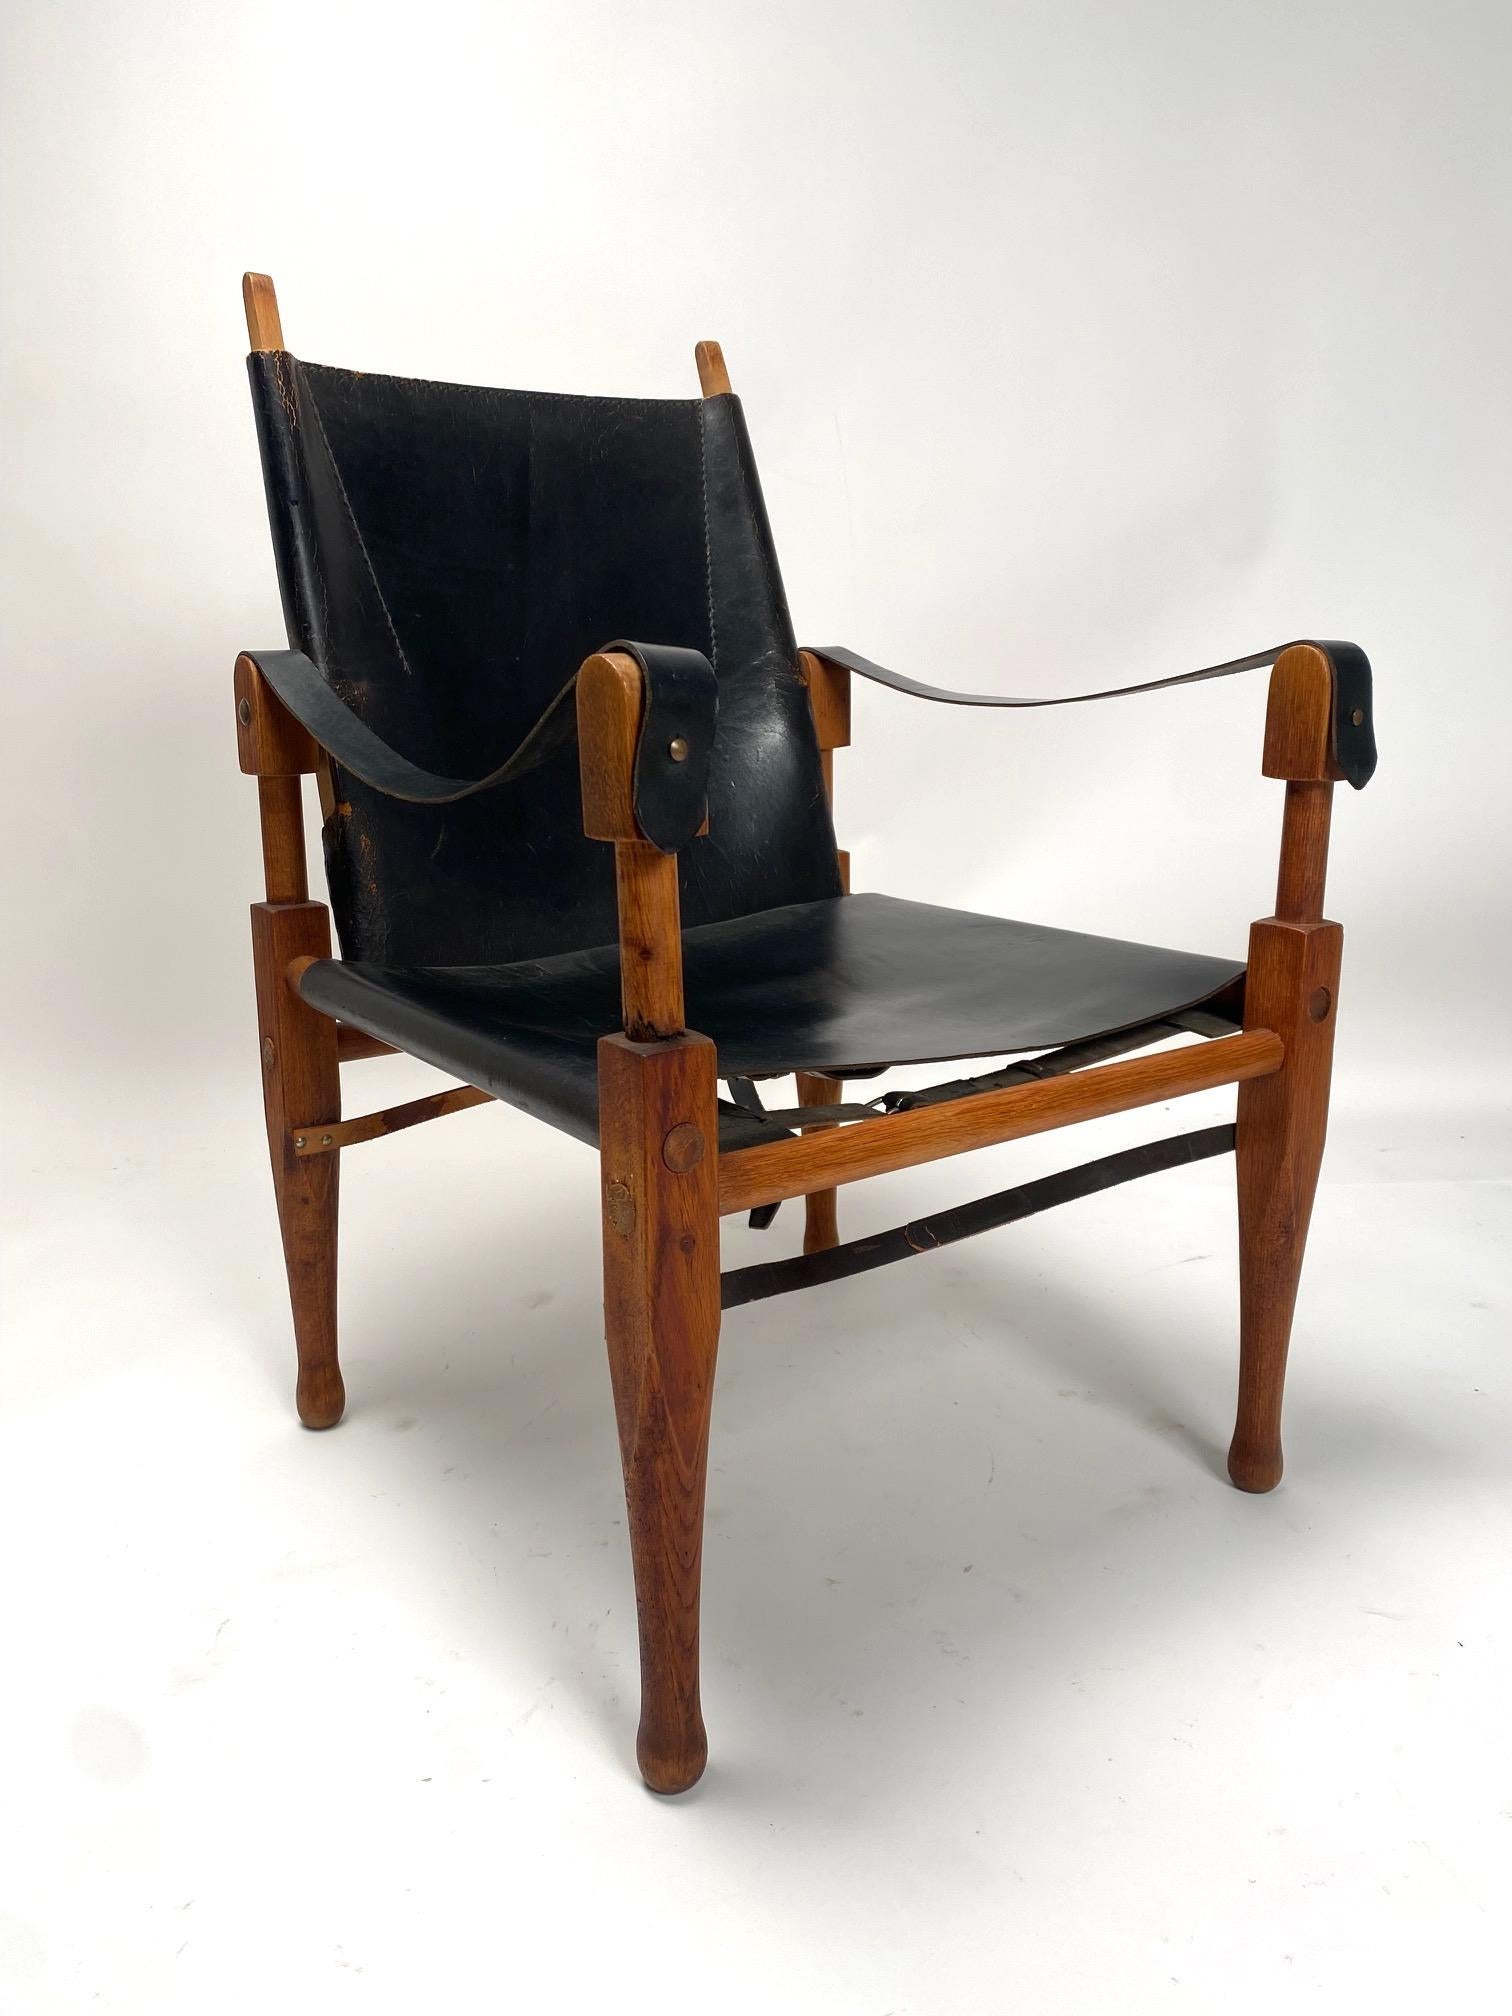 Paire de chaises longues Safari de Kaare Klint, Rasmussen, Danemark

Paire de chaises longues Safari, en cuir et bois, modèle KK47000 par Kaare Klint (1888-1954) pour Rud. Rasmussen Snedkerier, vers les années 1940.
Les chaises, d'un grand charme et